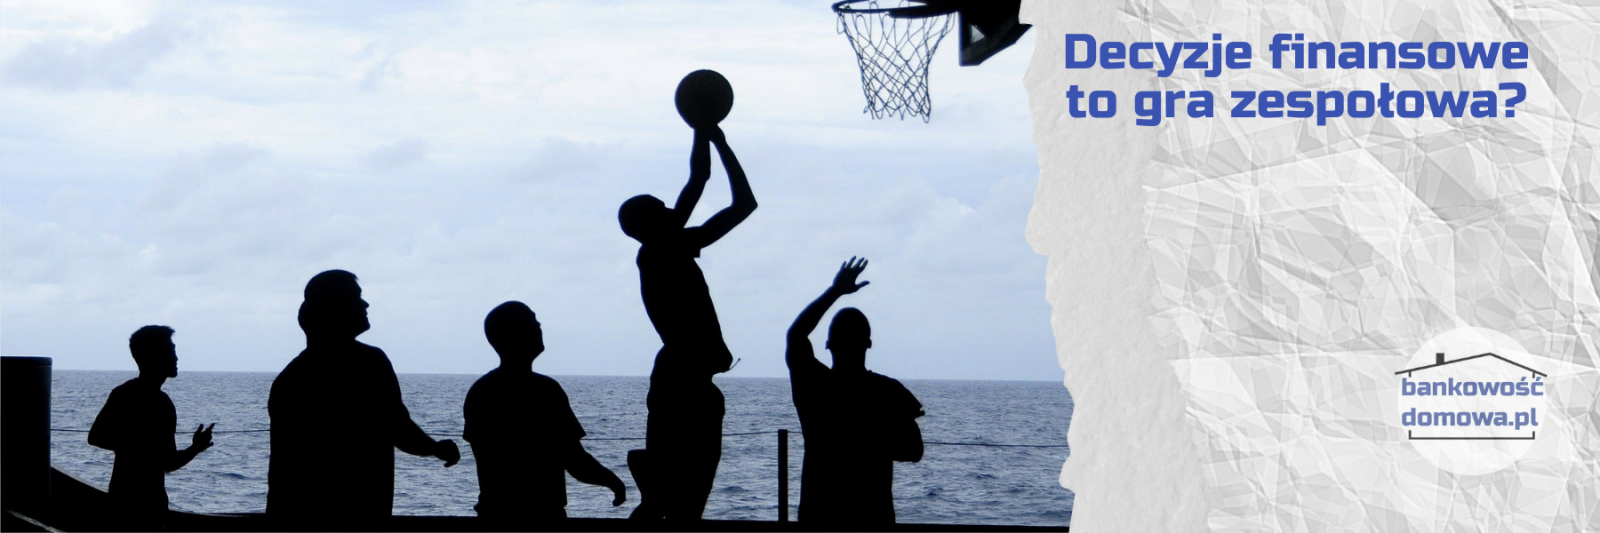 Grupa osób gra w koszykówkę zespołowo podobnie, jak rodzina może podejmować w ten sposób decyzje finansowe.